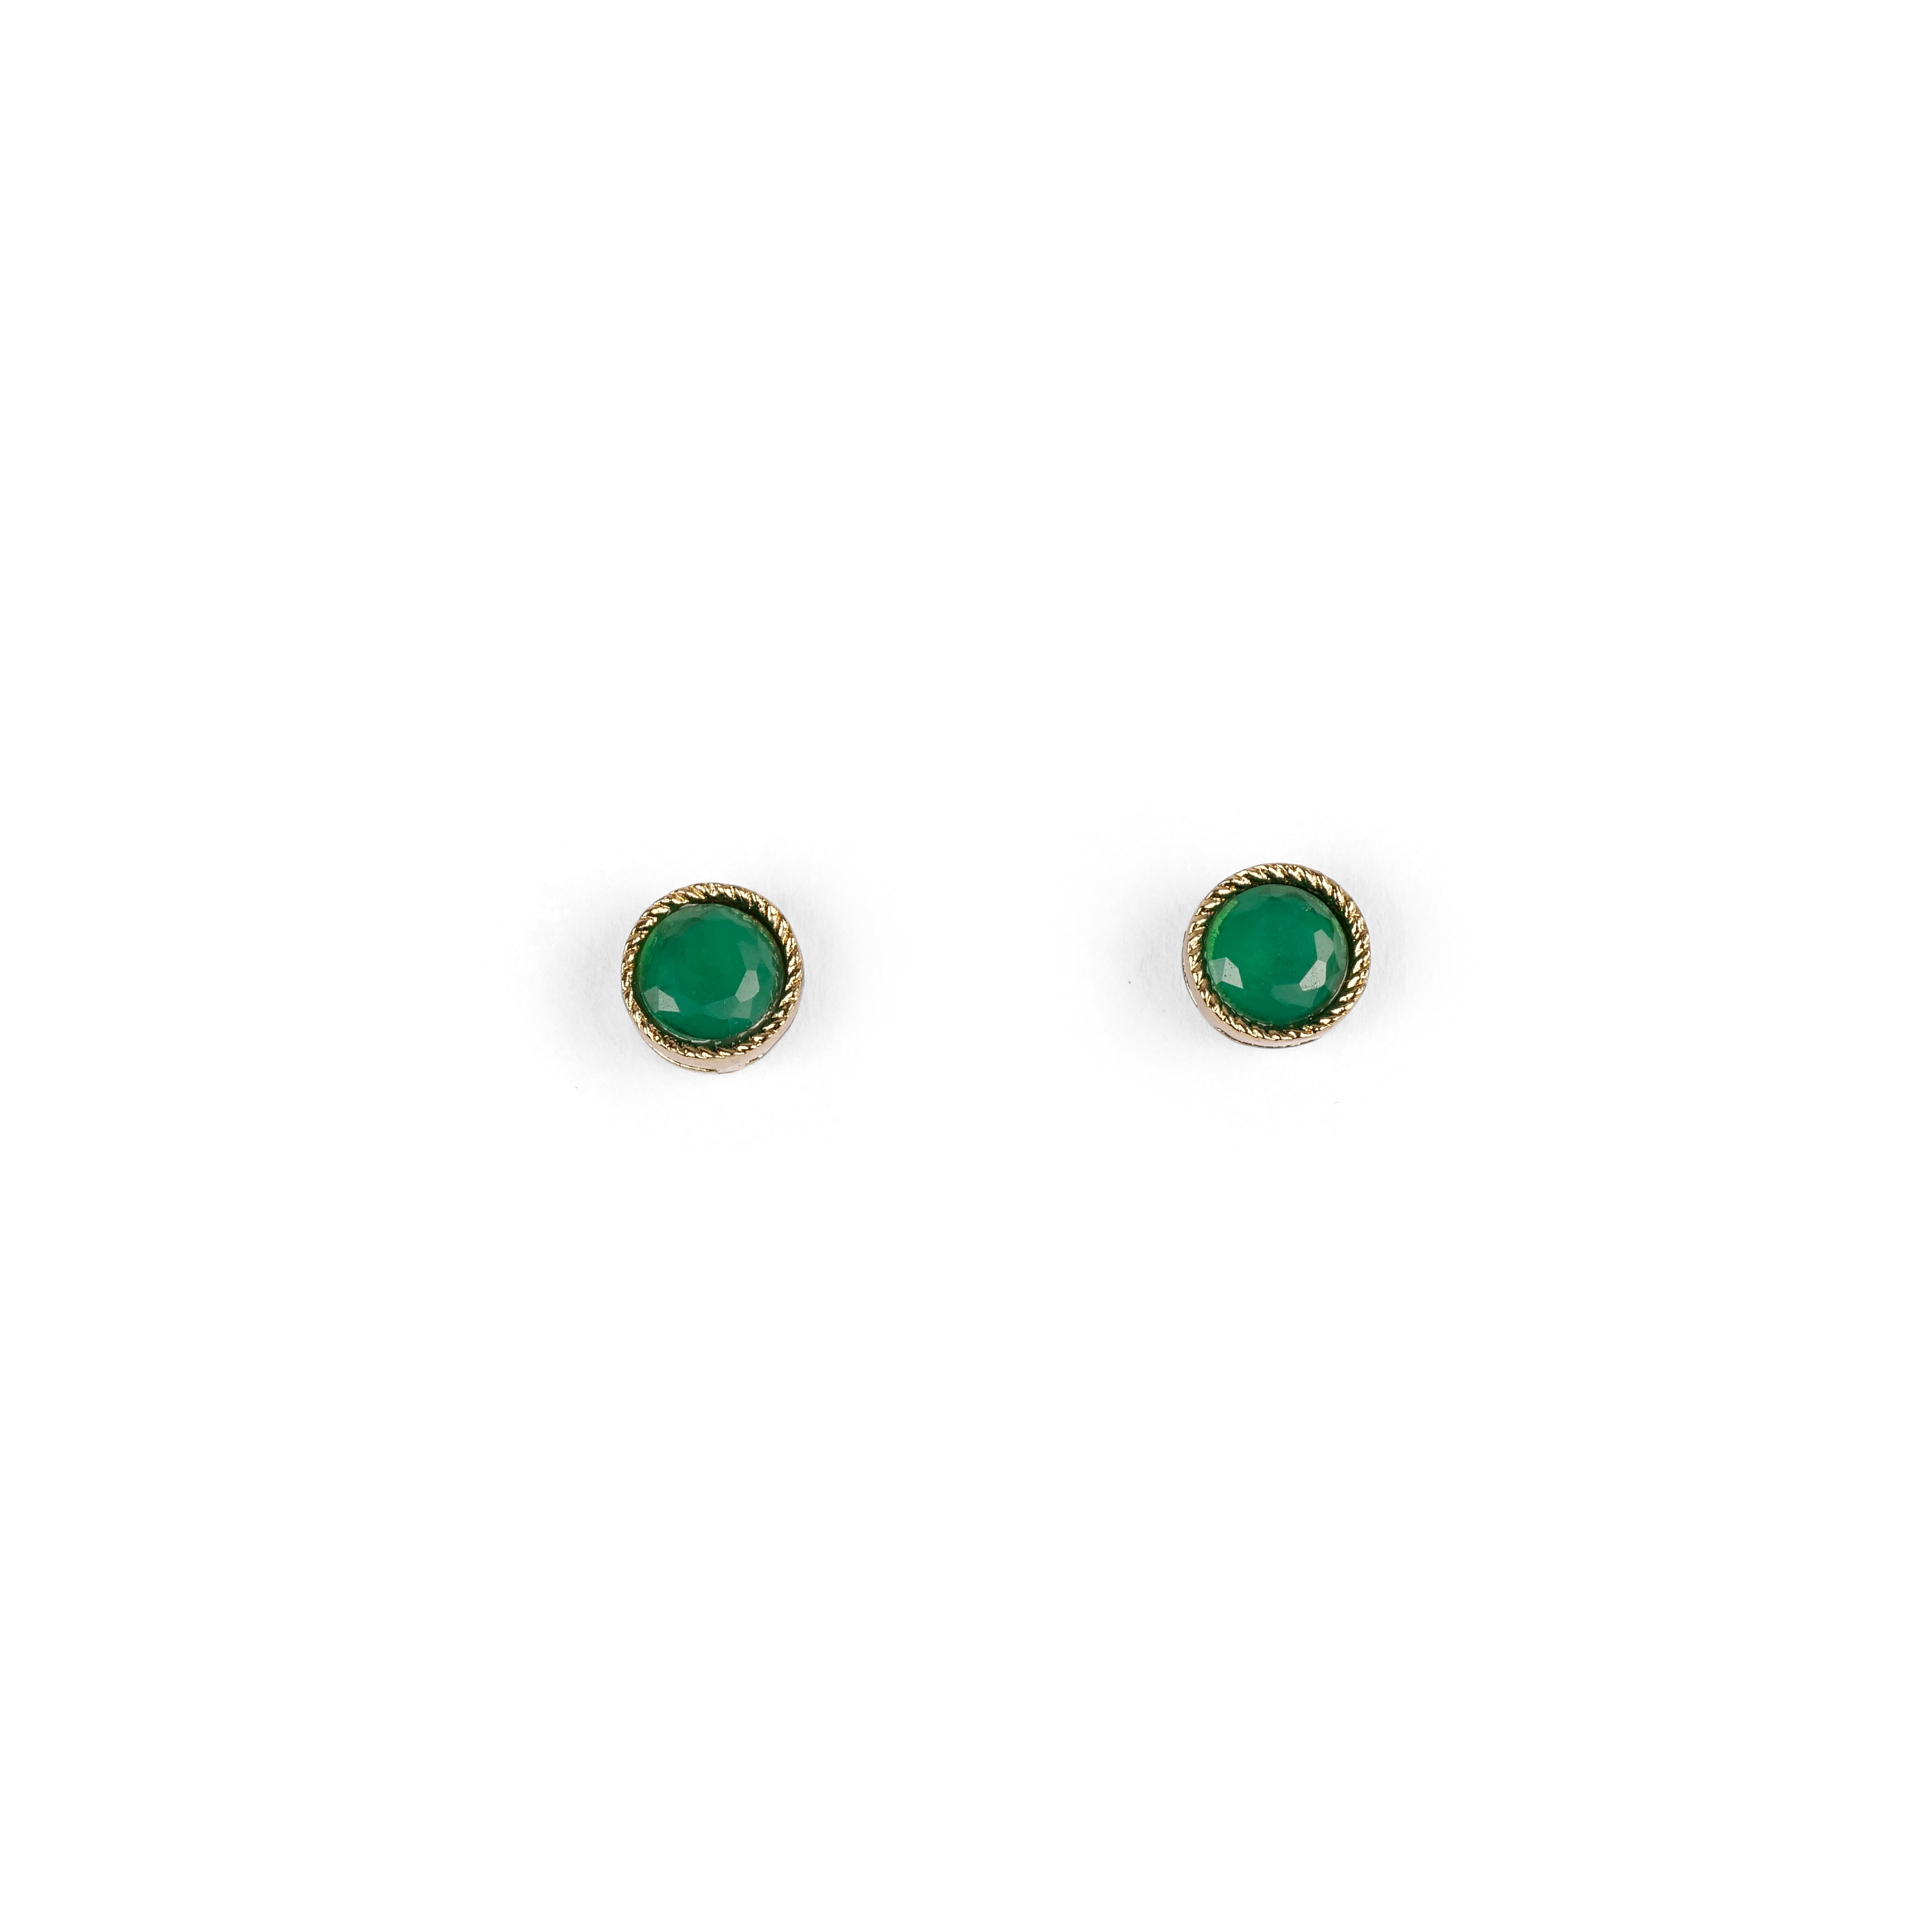 Lia 5mm Ear Studs in Green